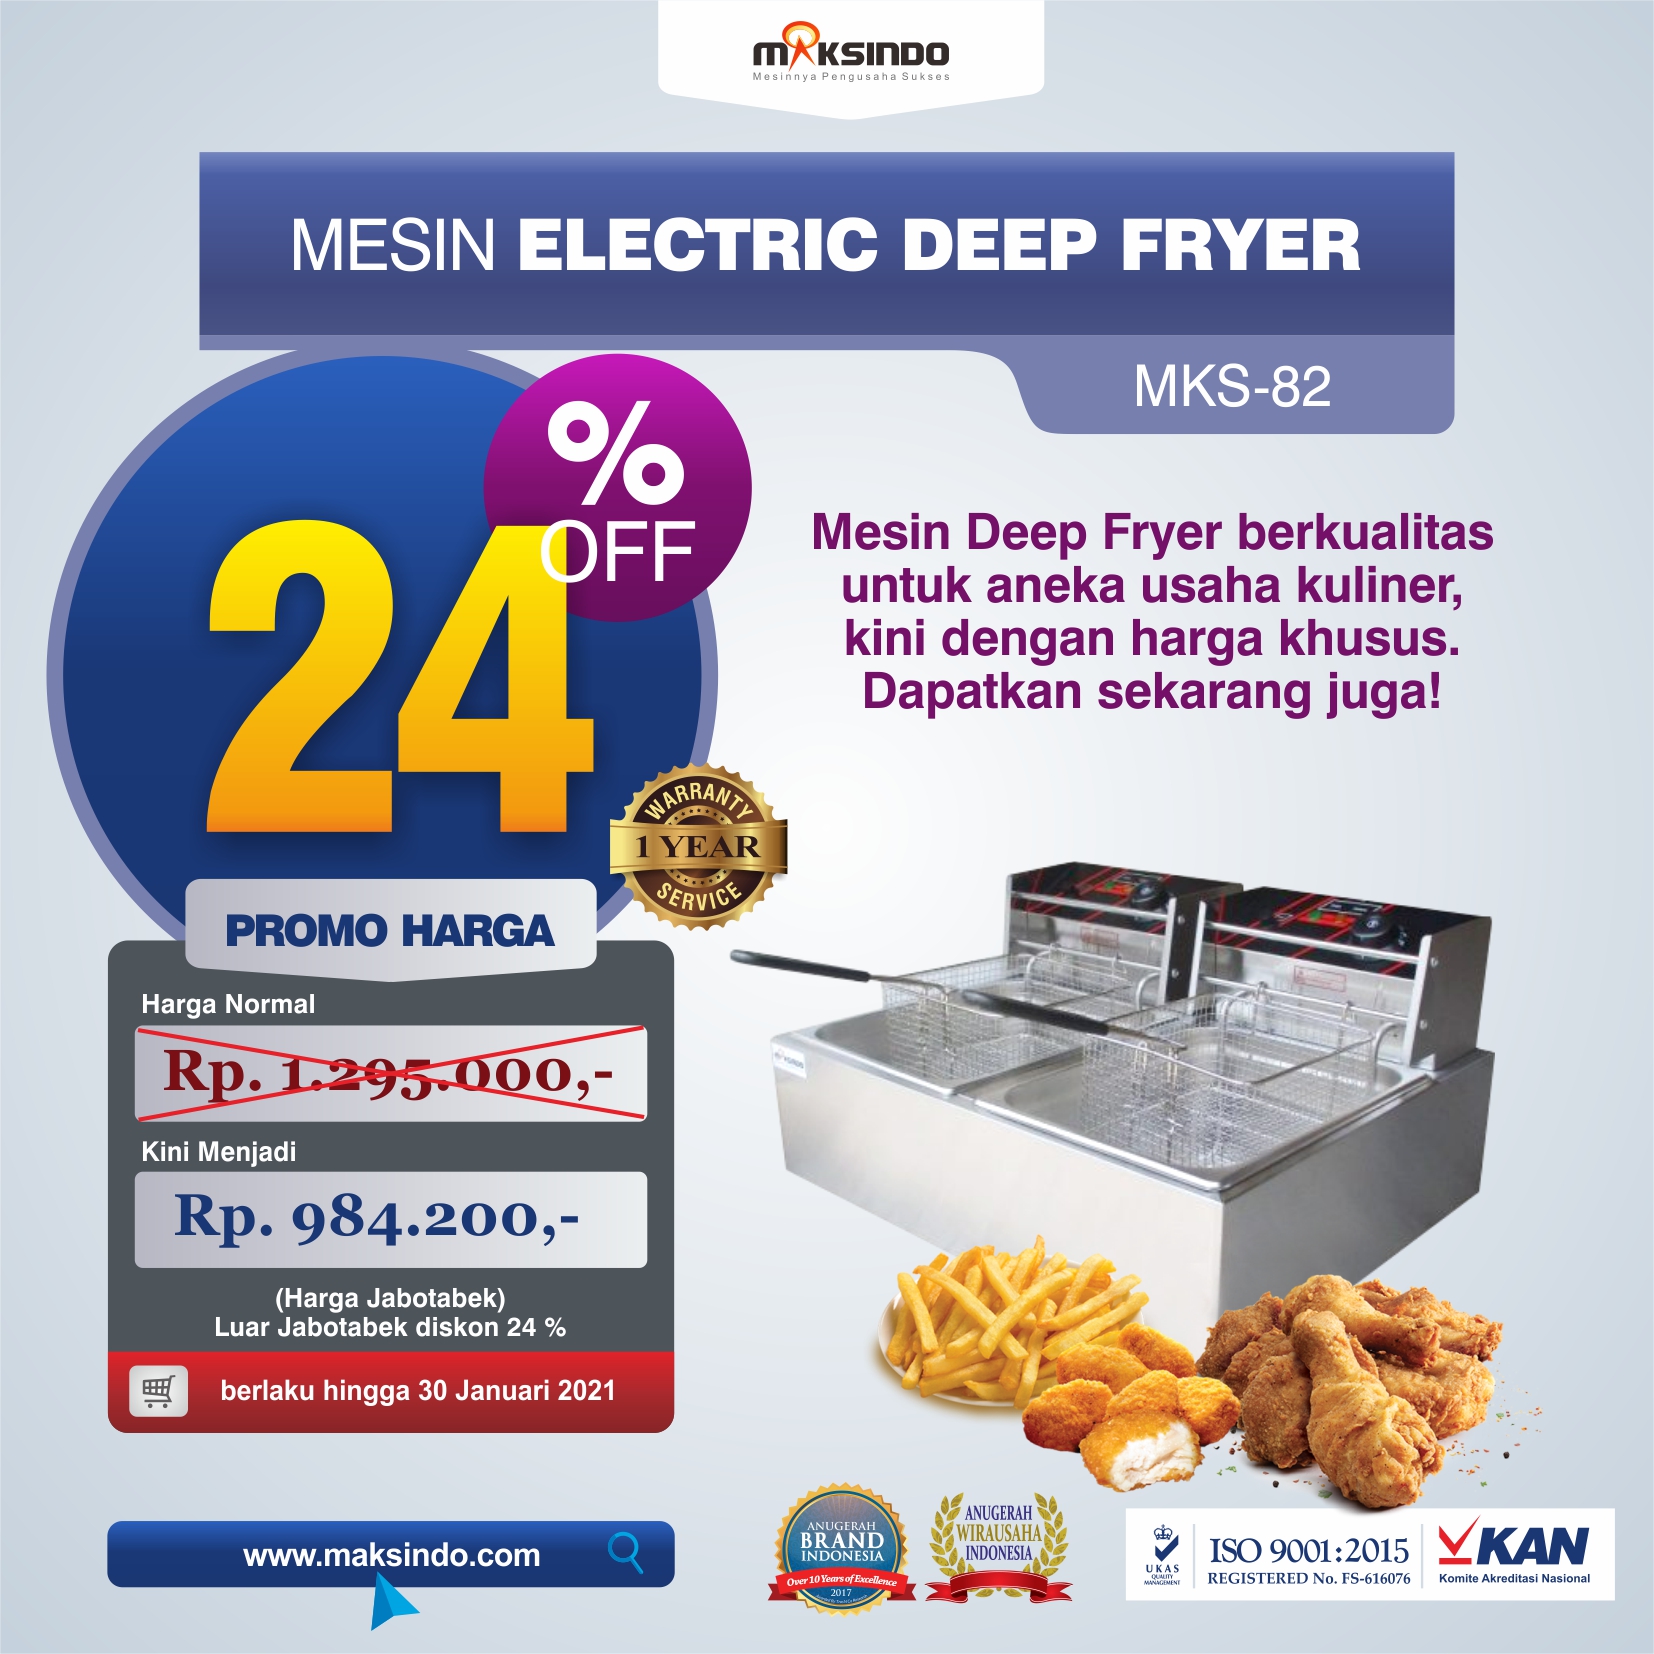 Jual Mesin Electric Deep Fryer MKS-82 di Bekasi